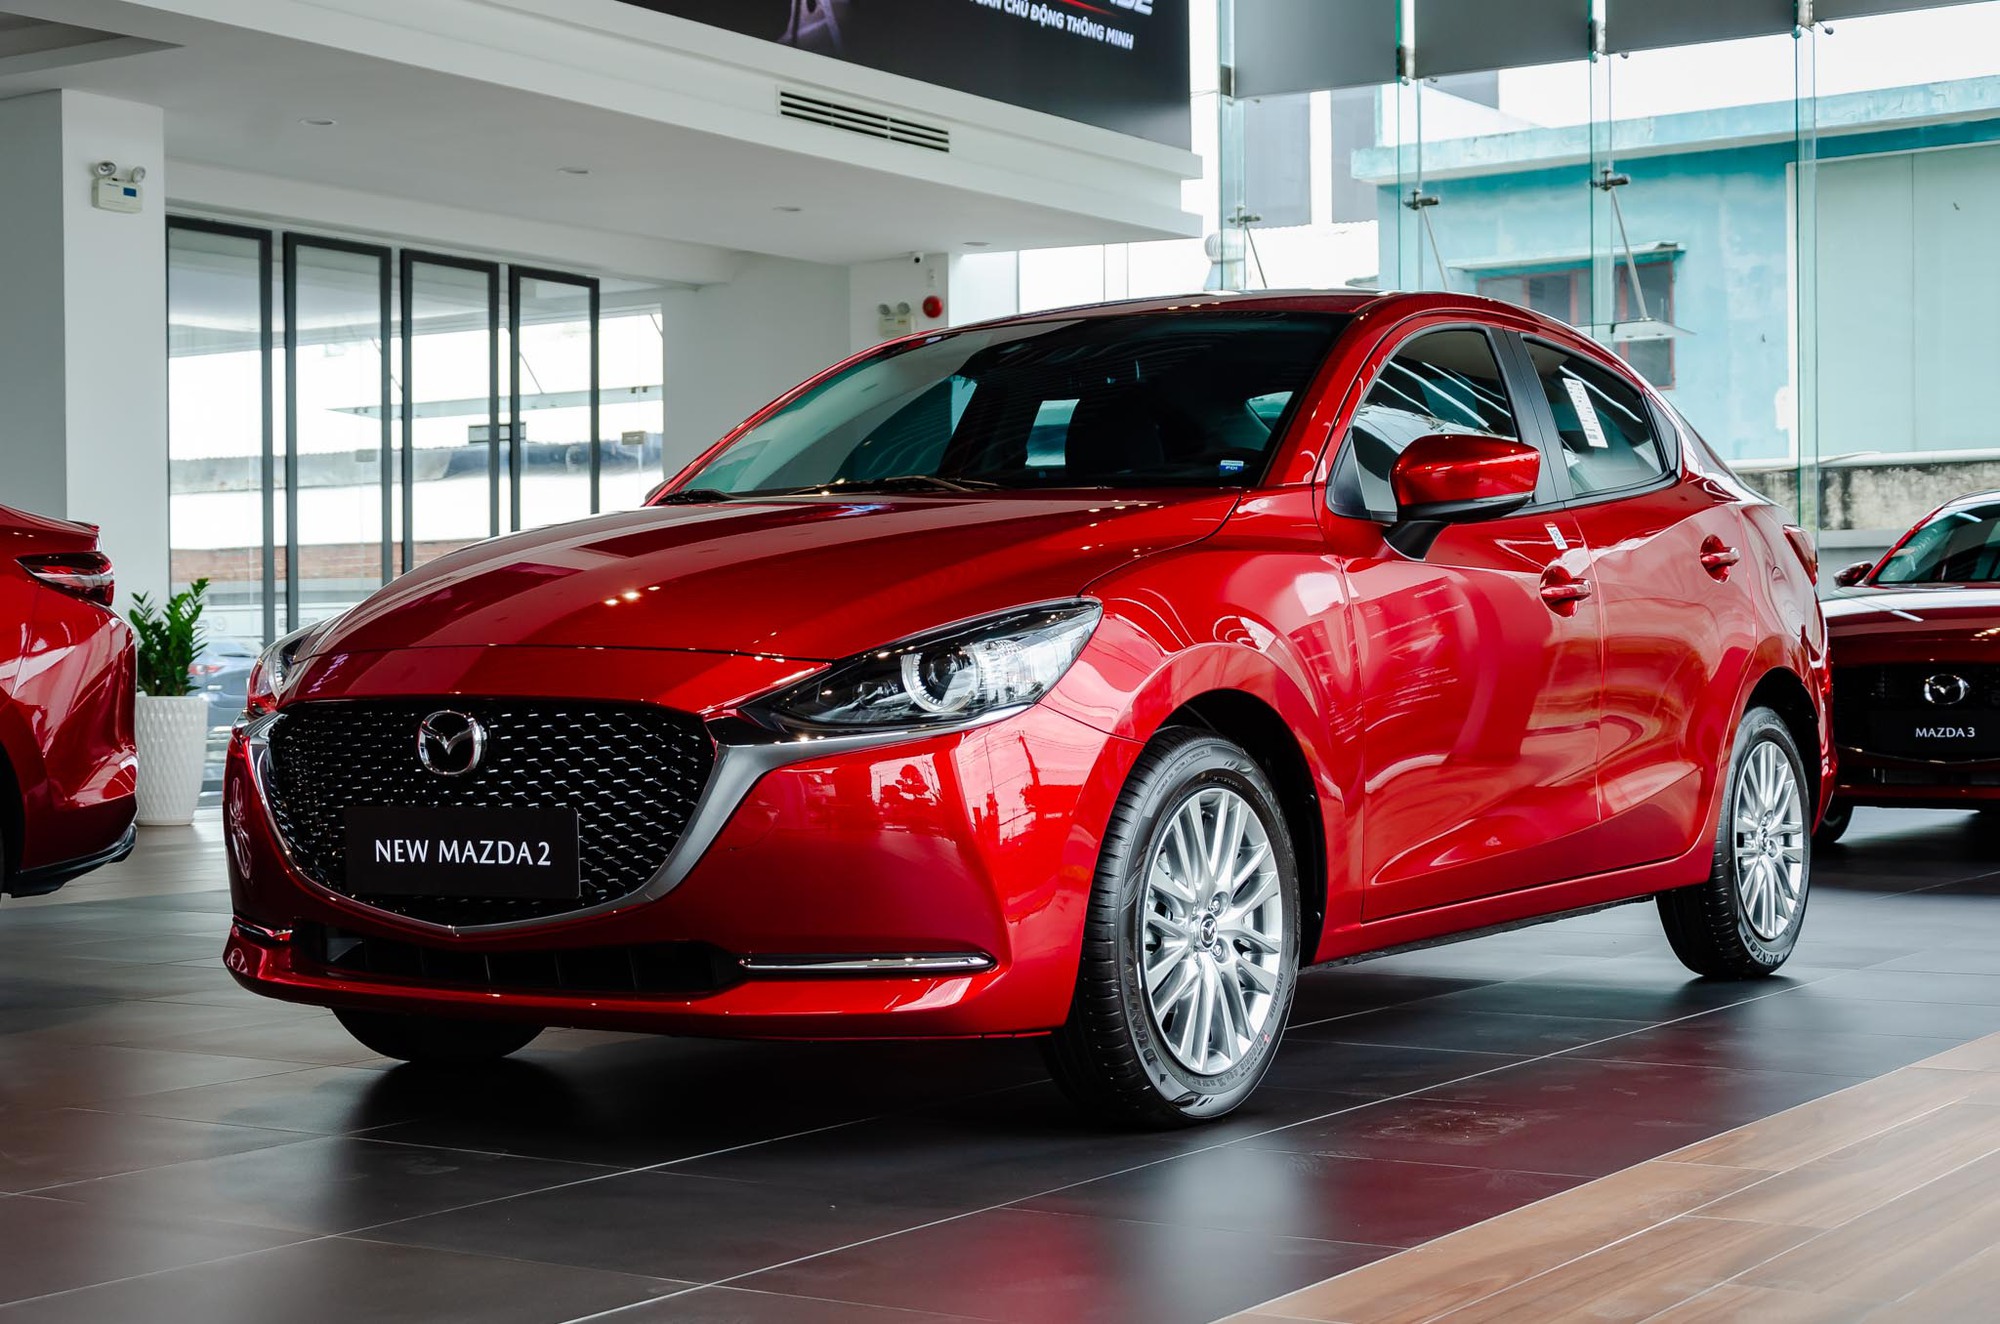 Tầm giá 600 triệu, khách hàng có thể sở hữu những mẫu xe nào của Mazda? - Ảnh 2.